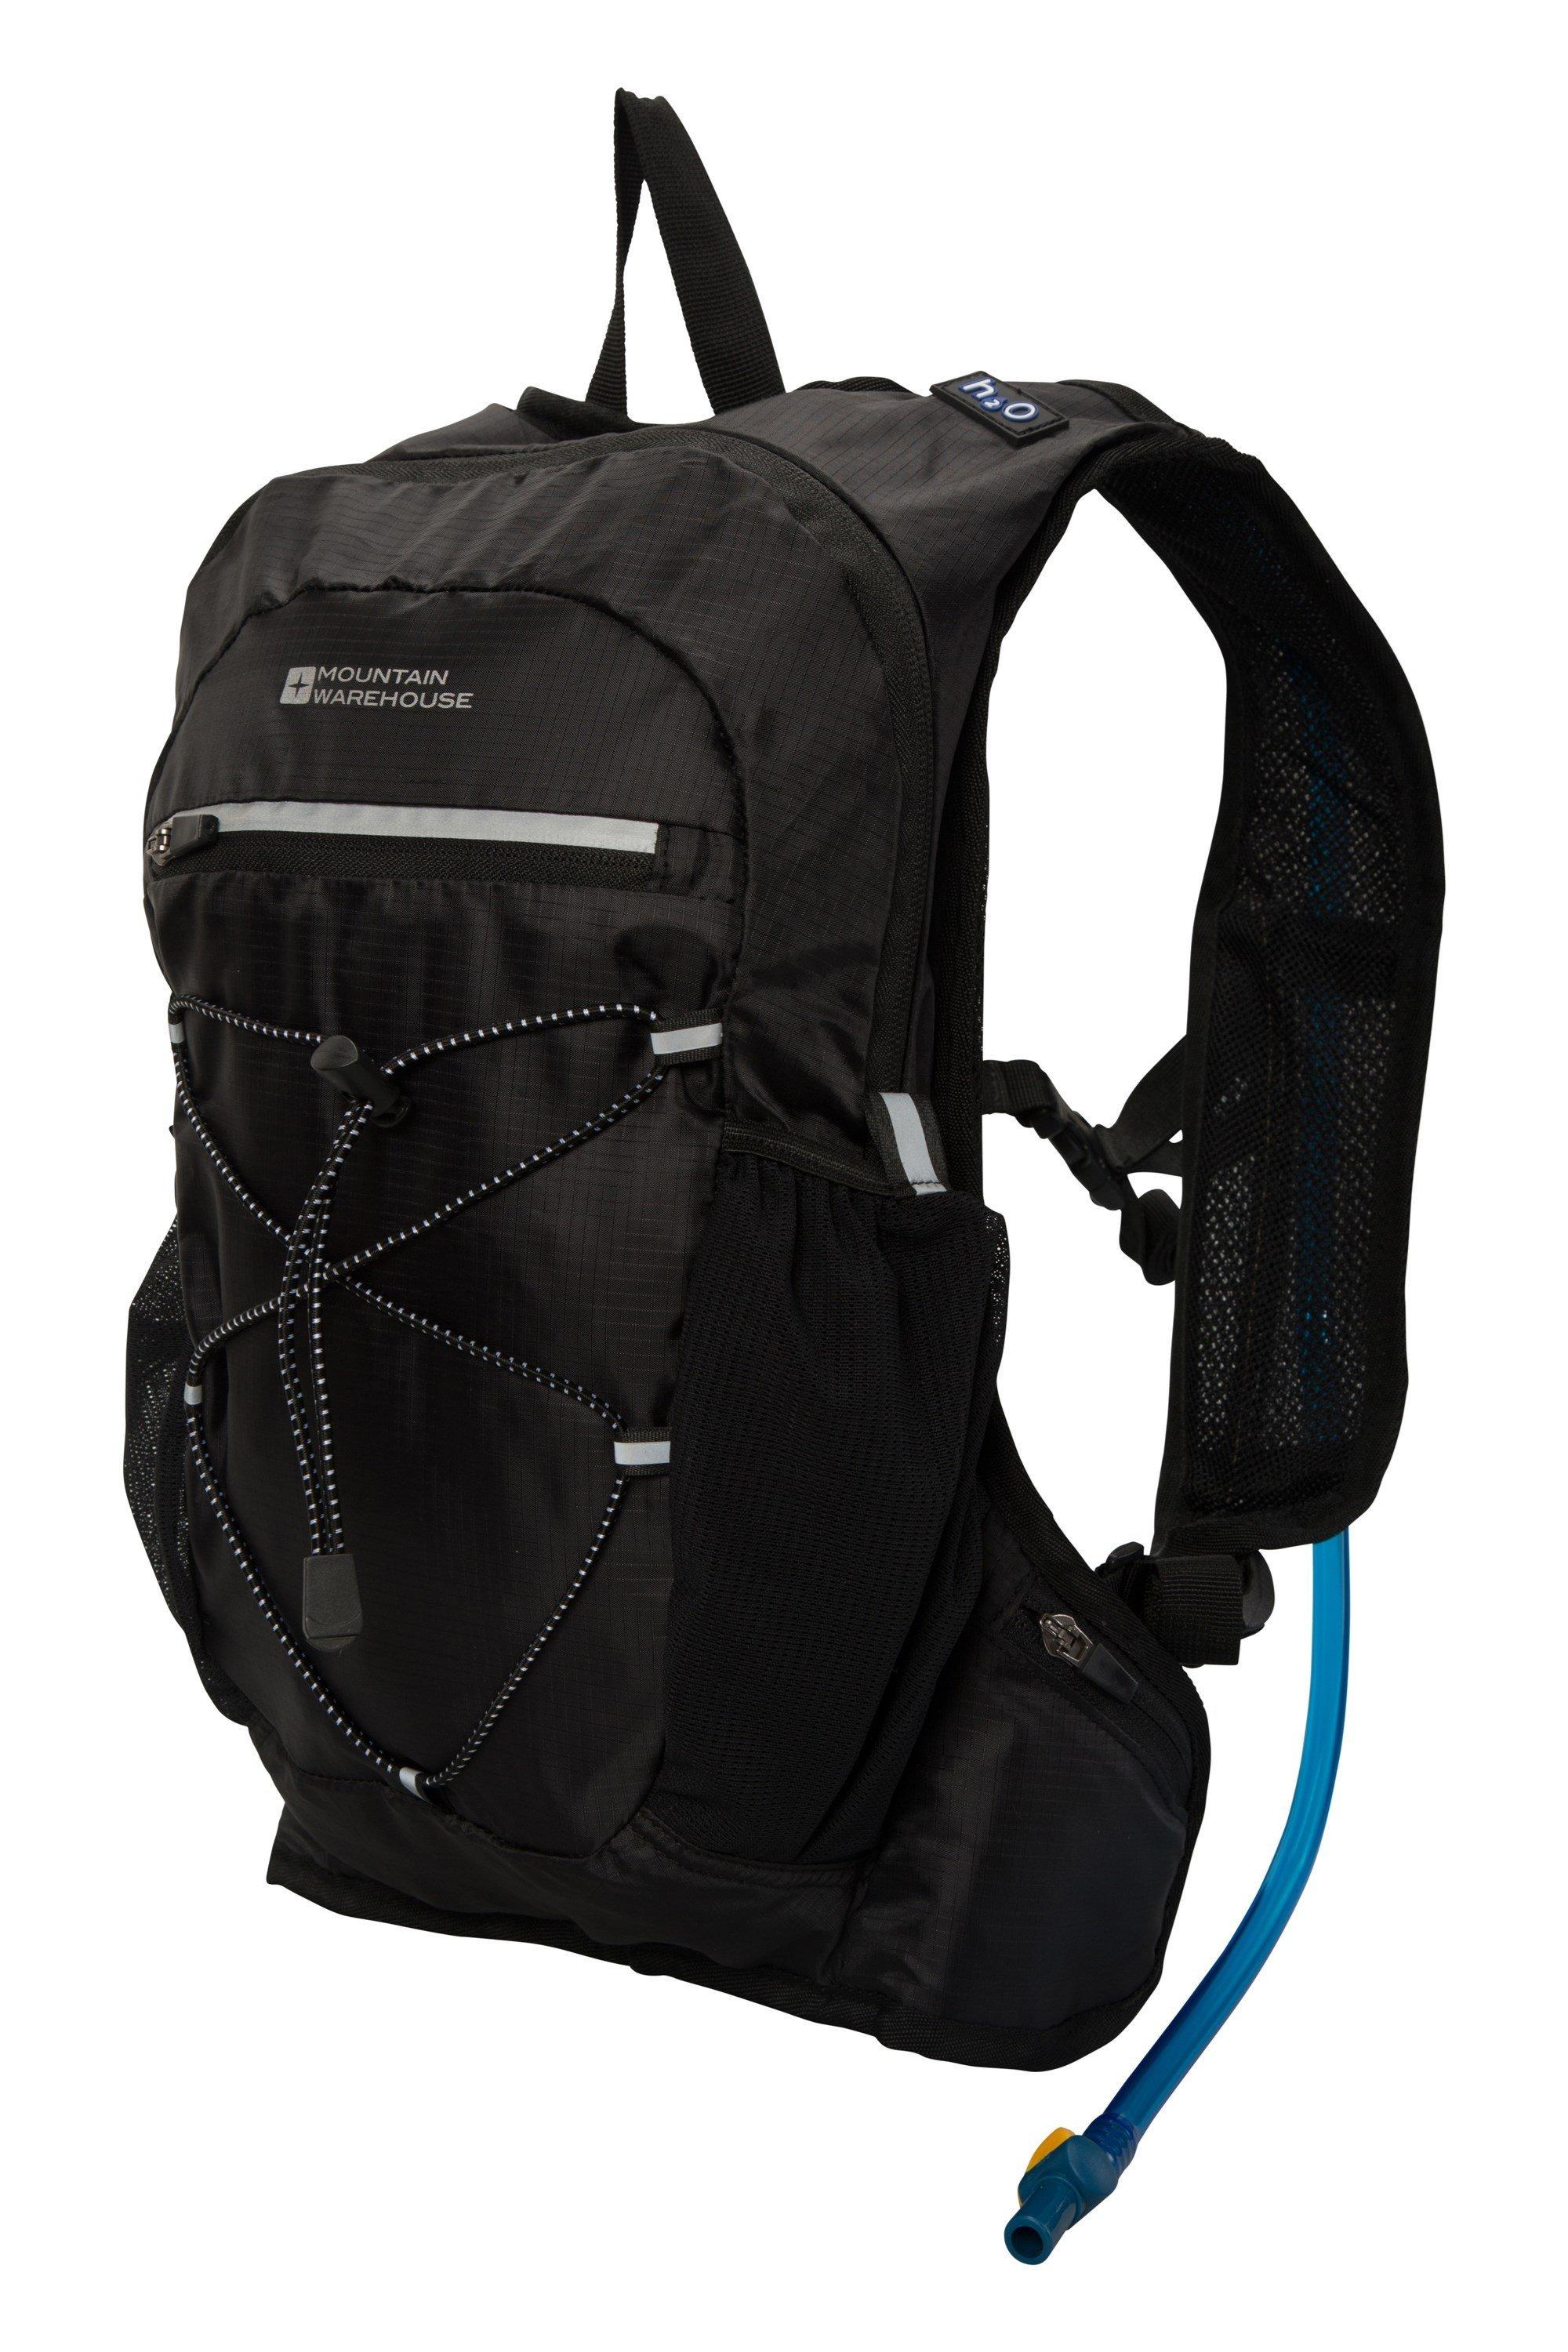 Рюкзак для гидратации объемом 6 л, рюкзак для бега, велоспорта, рюкзак Mountain Warehouse, черный